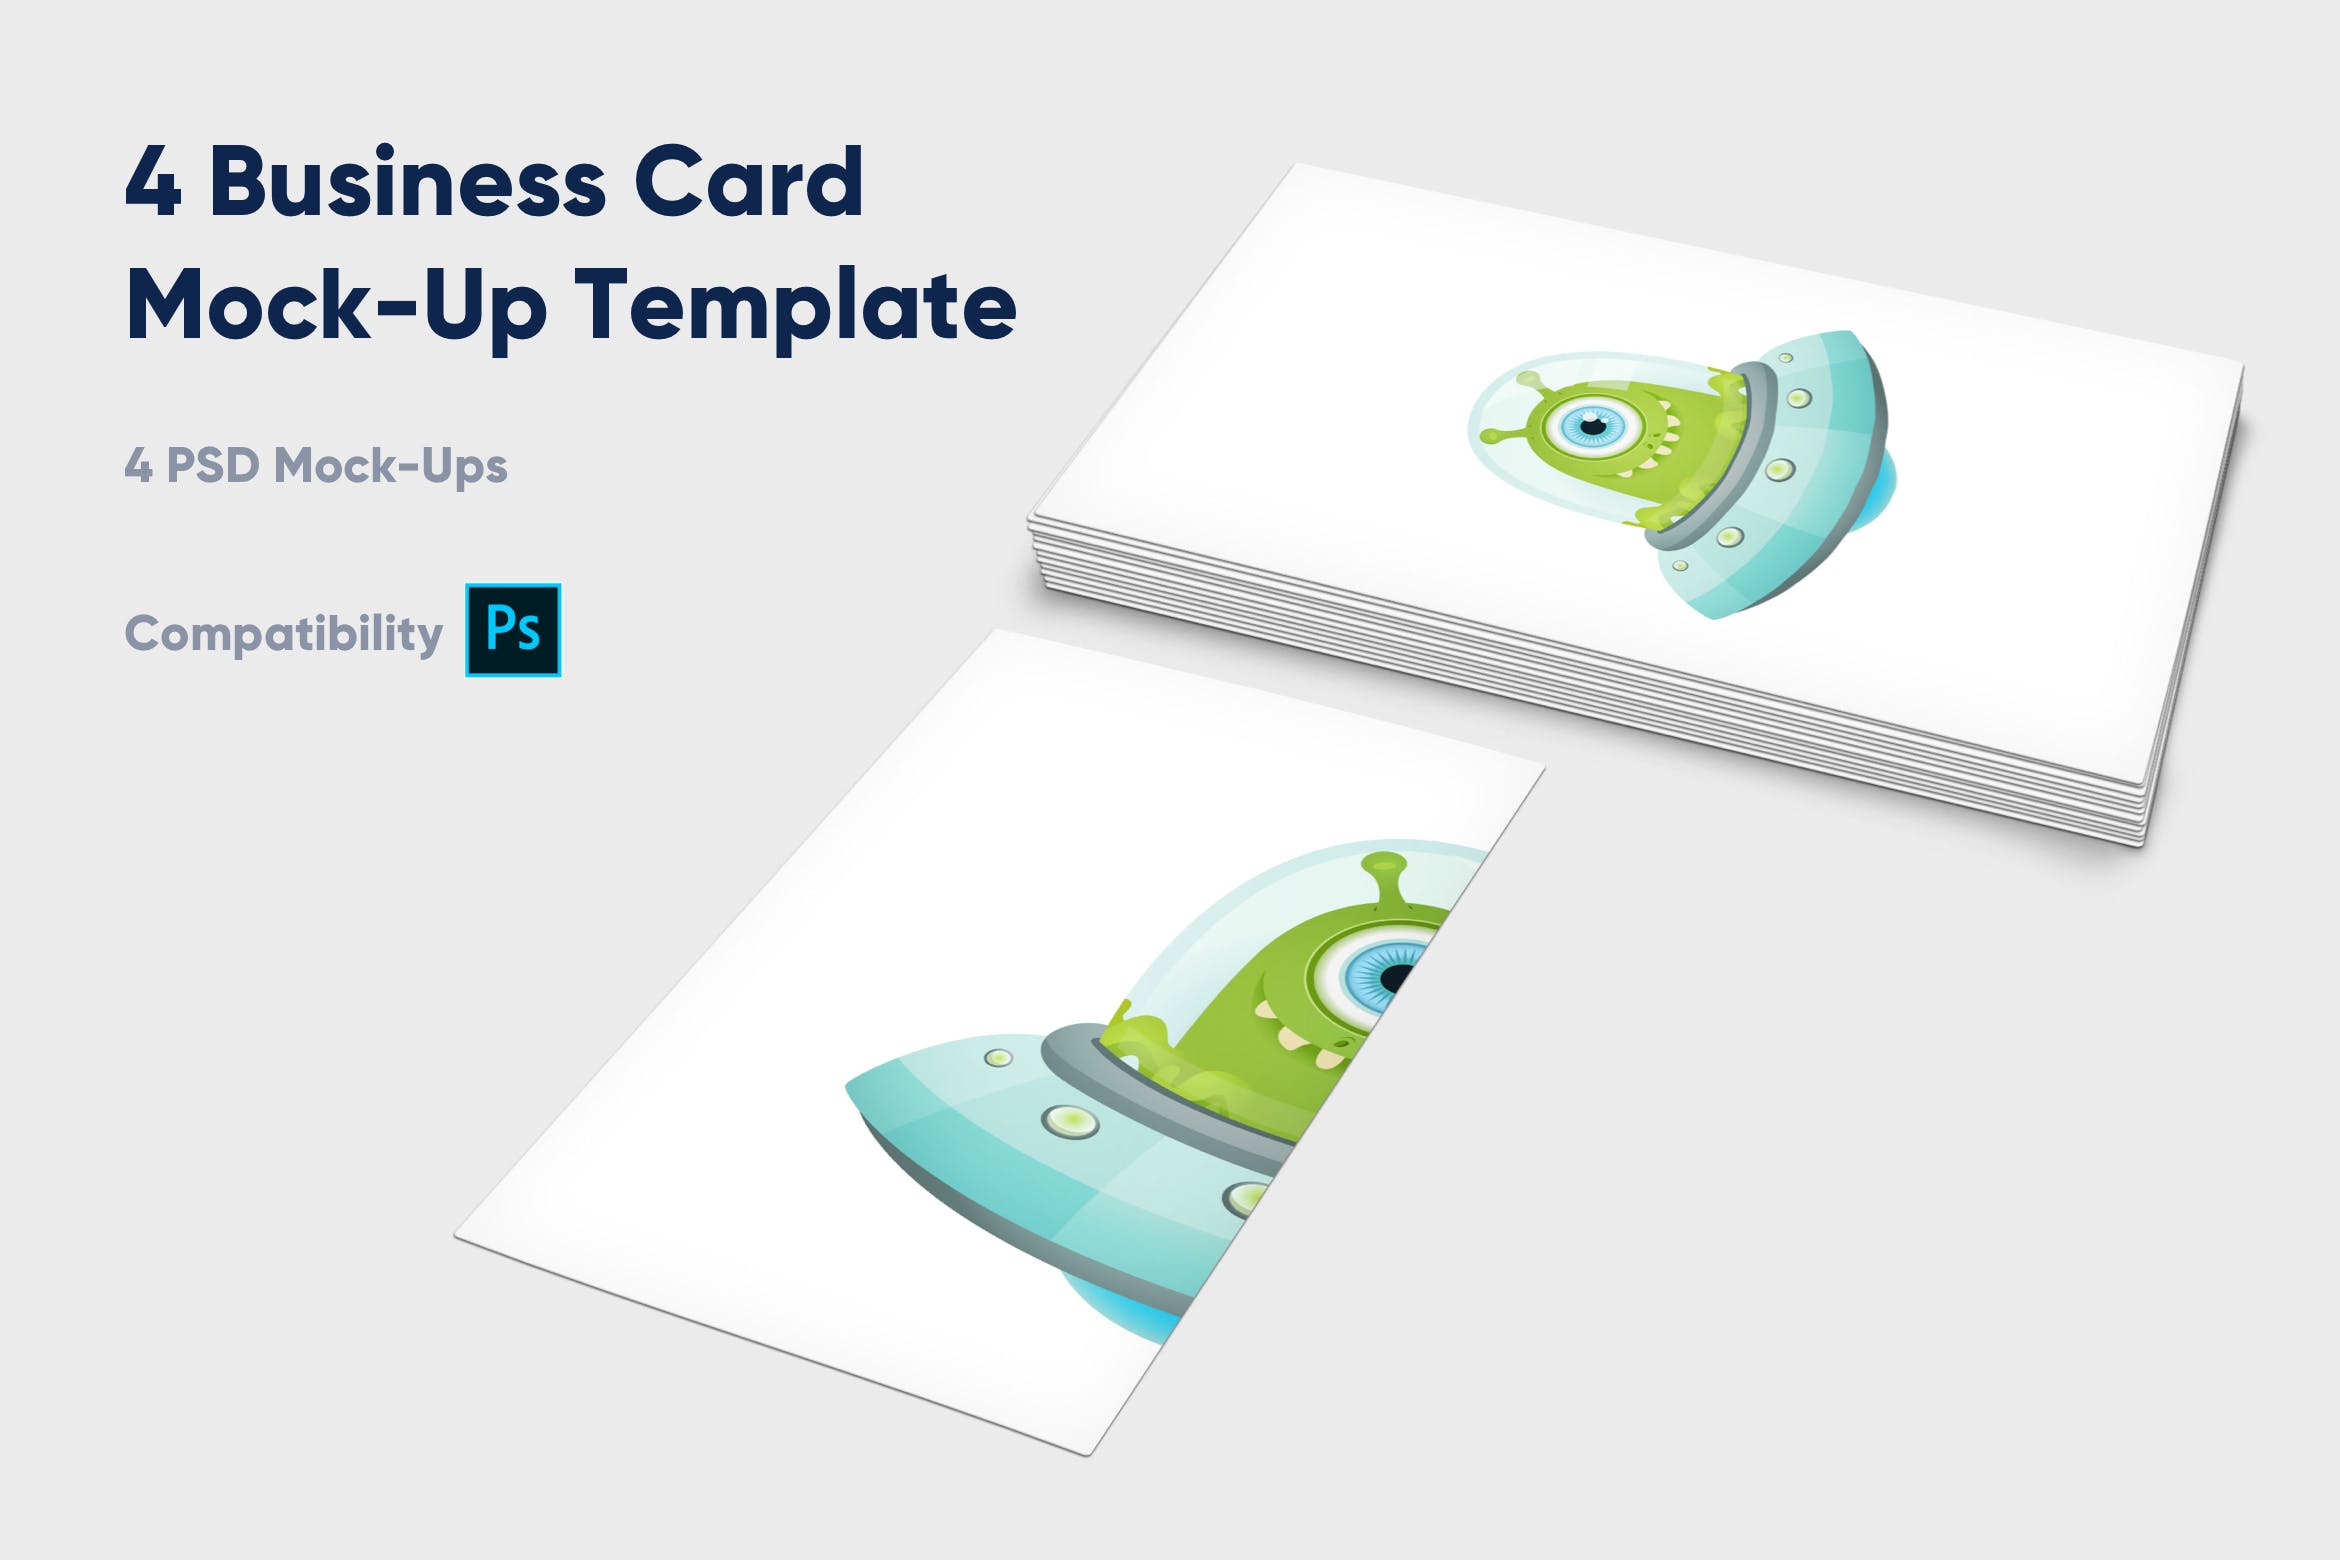 企业名片设计效果图展示样机第一素材精选模板 4 Business Card Mock-Up Template插图